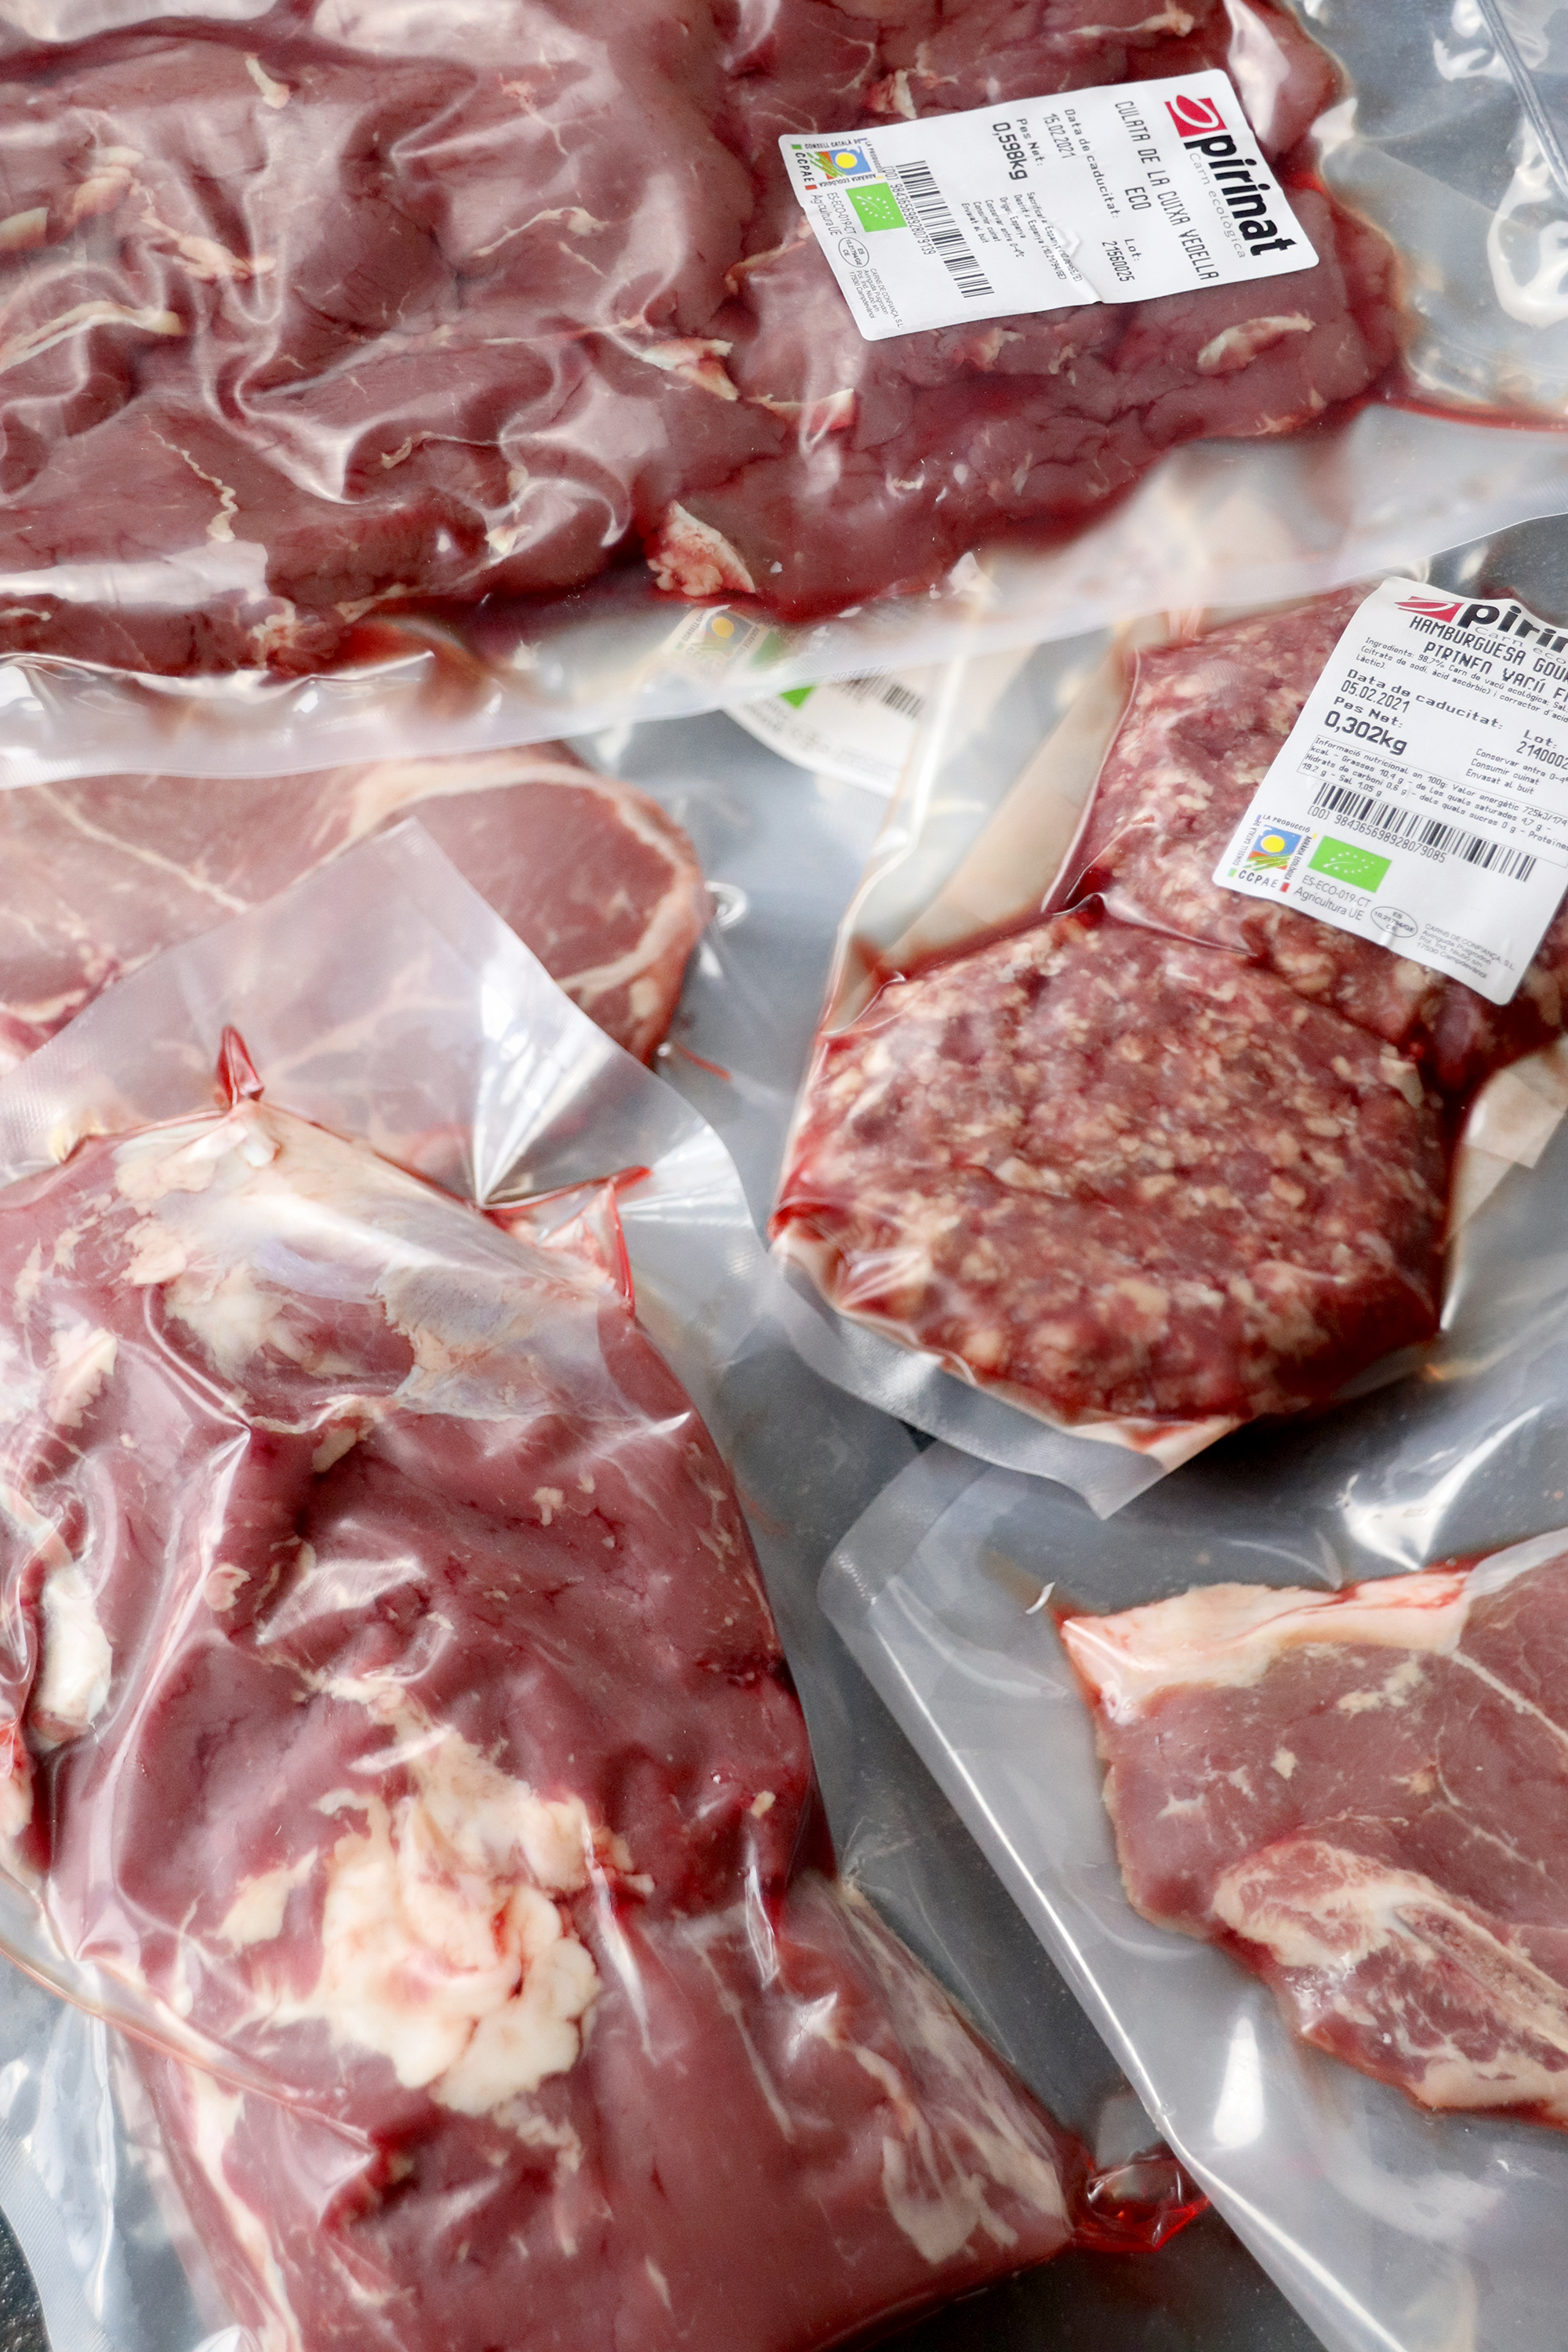 ¿Queréis saber algunos consejos de como congelar correctamente la carne de ternera, para conservarla adecuadamente, manteniendo un perfecto estado del producto y todas sus propiedades?